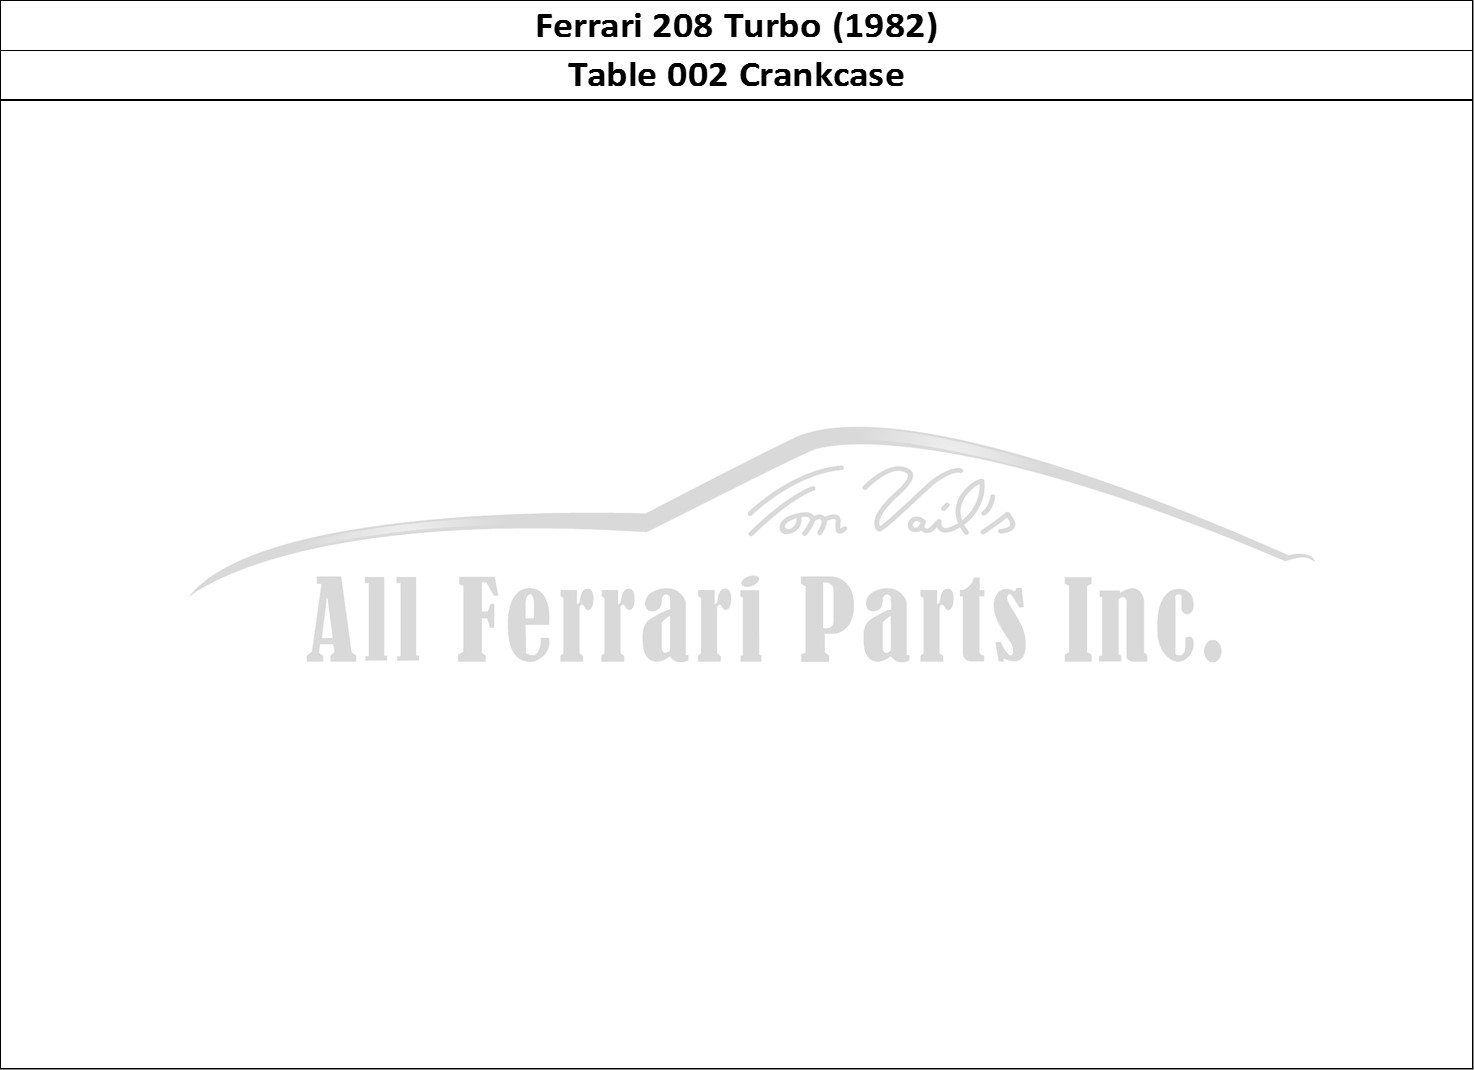 Ferrari Parts Ferrari 208 Turbo (1982) Page 002 Crankcase